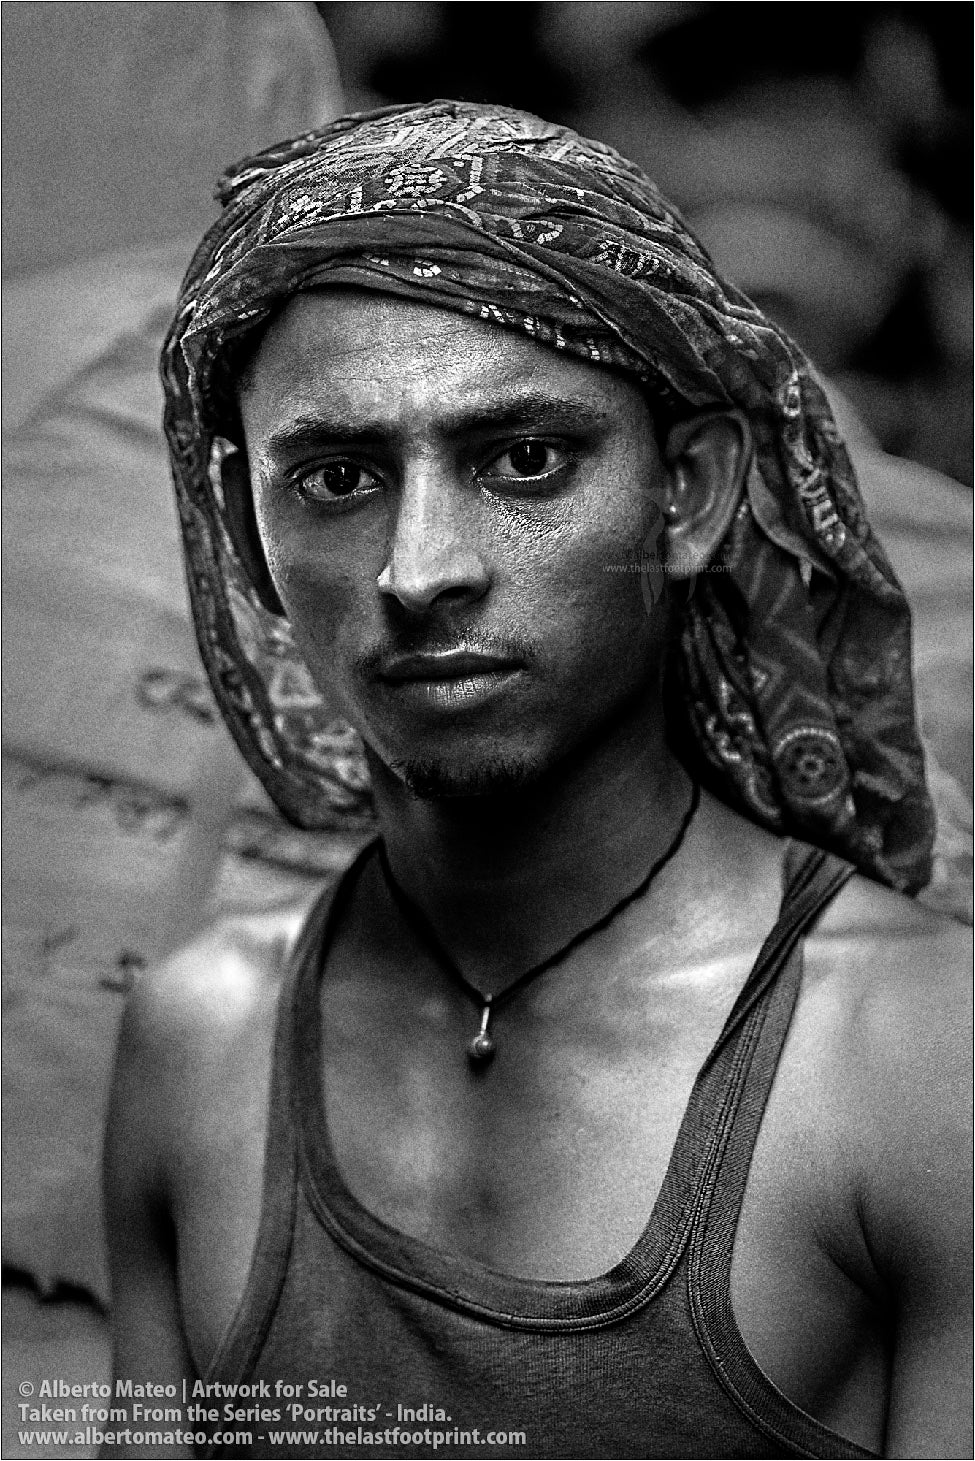 Young porter, Bara Bazar, Kolkata, India.